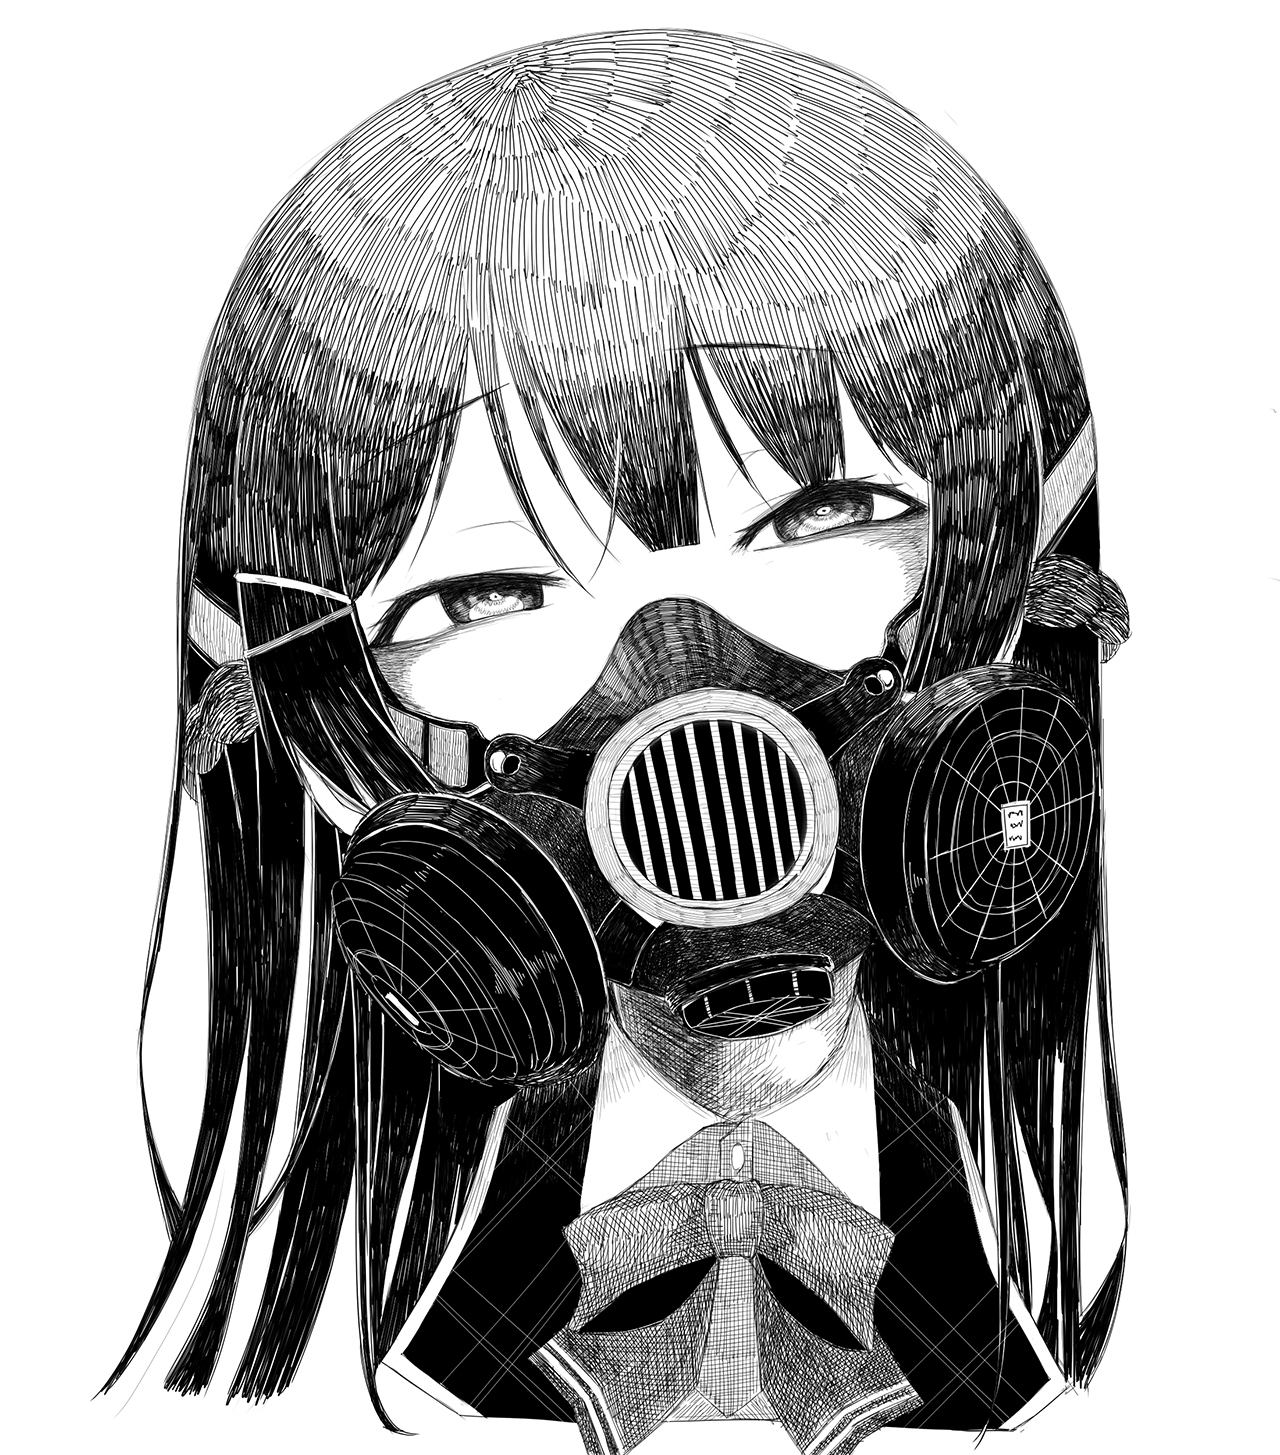 ガスマスク女子 イラスト集16枚 顔を覆う無機質な装置からただよう異形のオーラ ニコニコニュース オリジナル